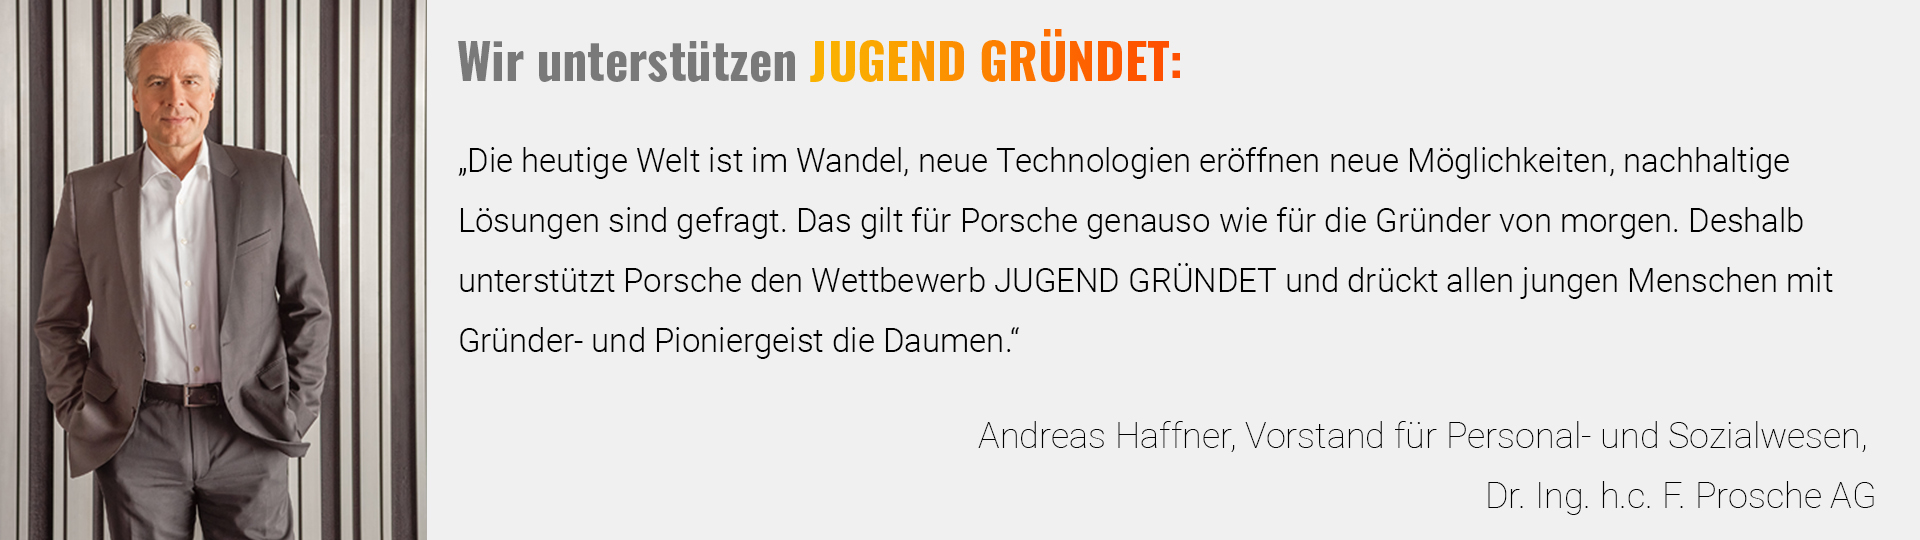 JUGEND GRÜNDET Partnerseite Statement Andreas Haffner